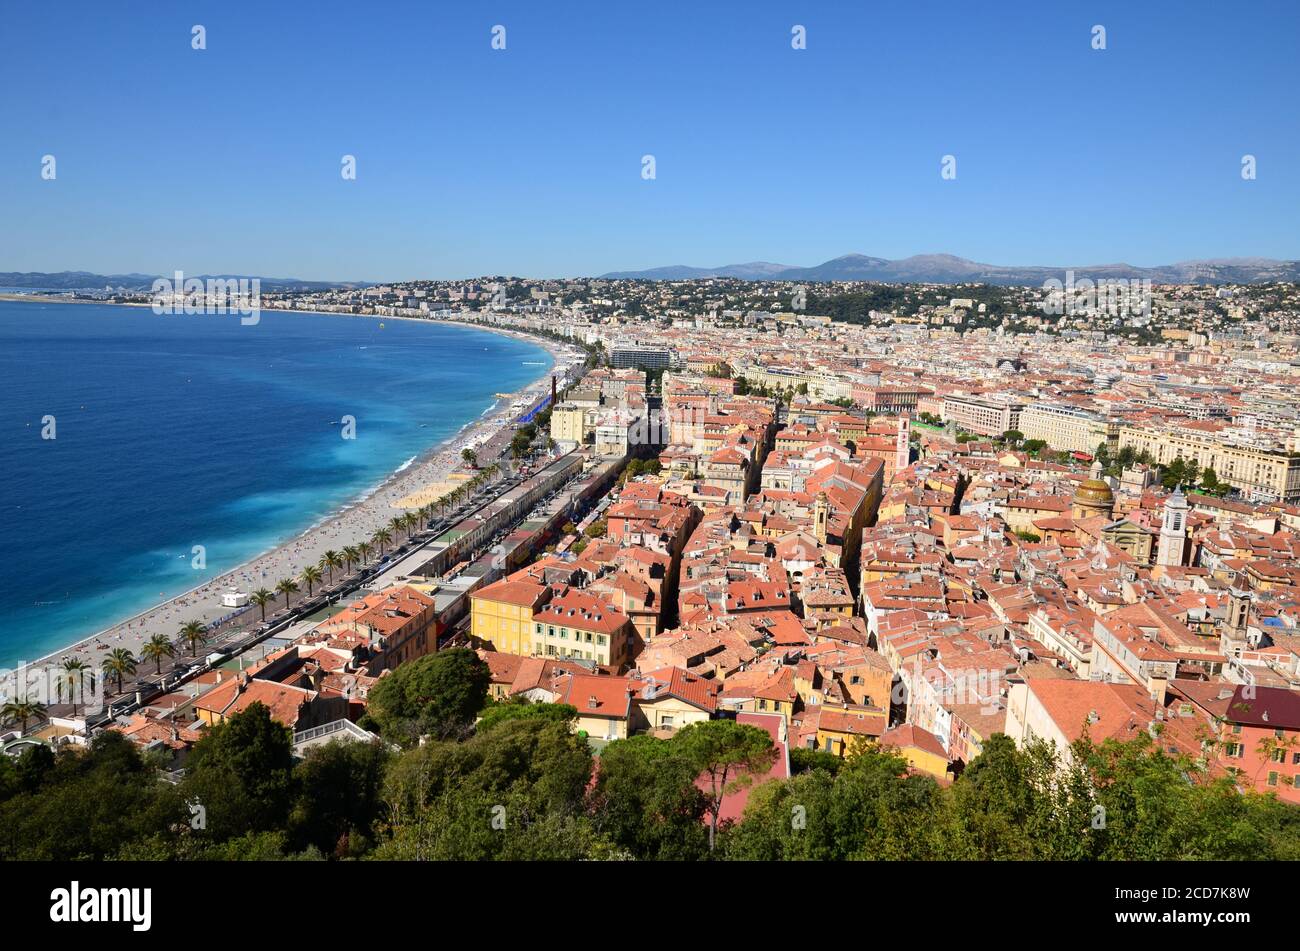 Francia, costa azzurra, Nizza città, la città di carnevale vista dalla collina del castello offre un magnifico panorama sulla baia degli Angeli e la città vecchia. Foto Stock